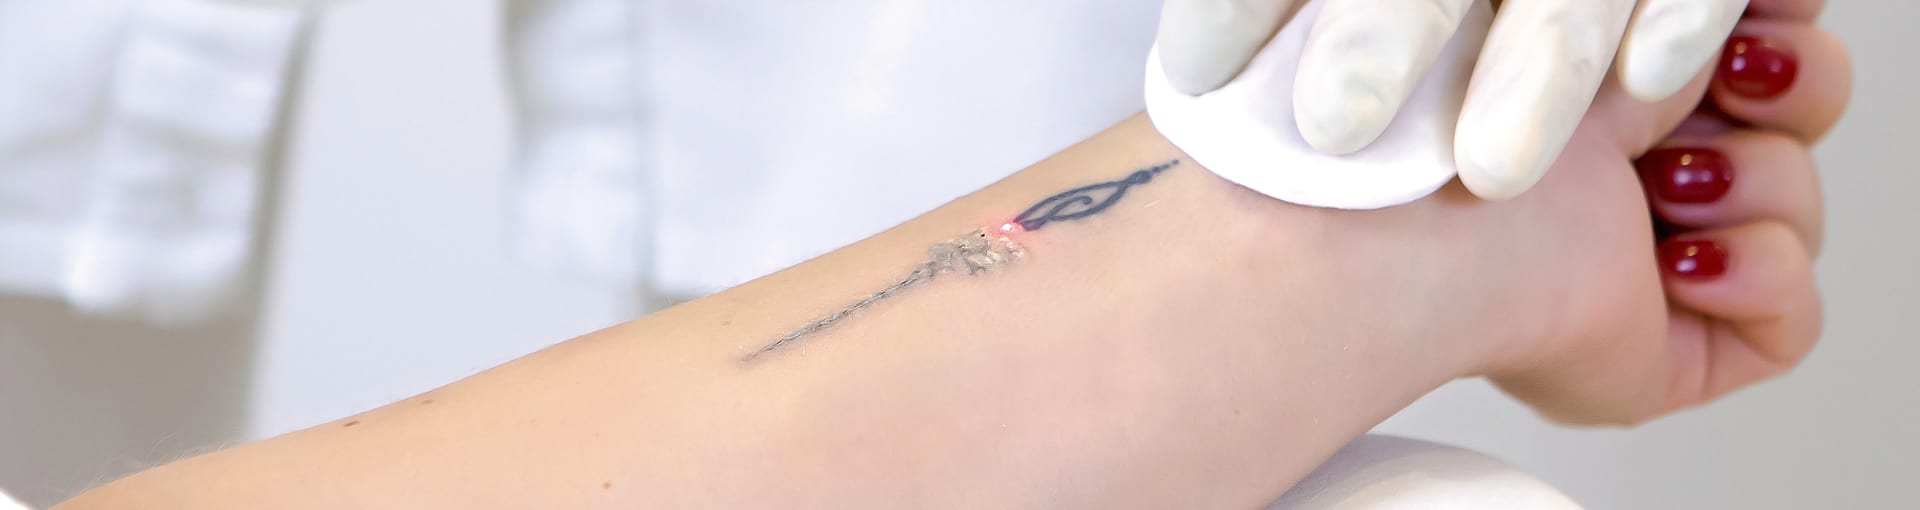 gaja a fazer remoção de tatuagem com laser site Episense clínica de medicina estética facial e corporal no Porto - Portugal